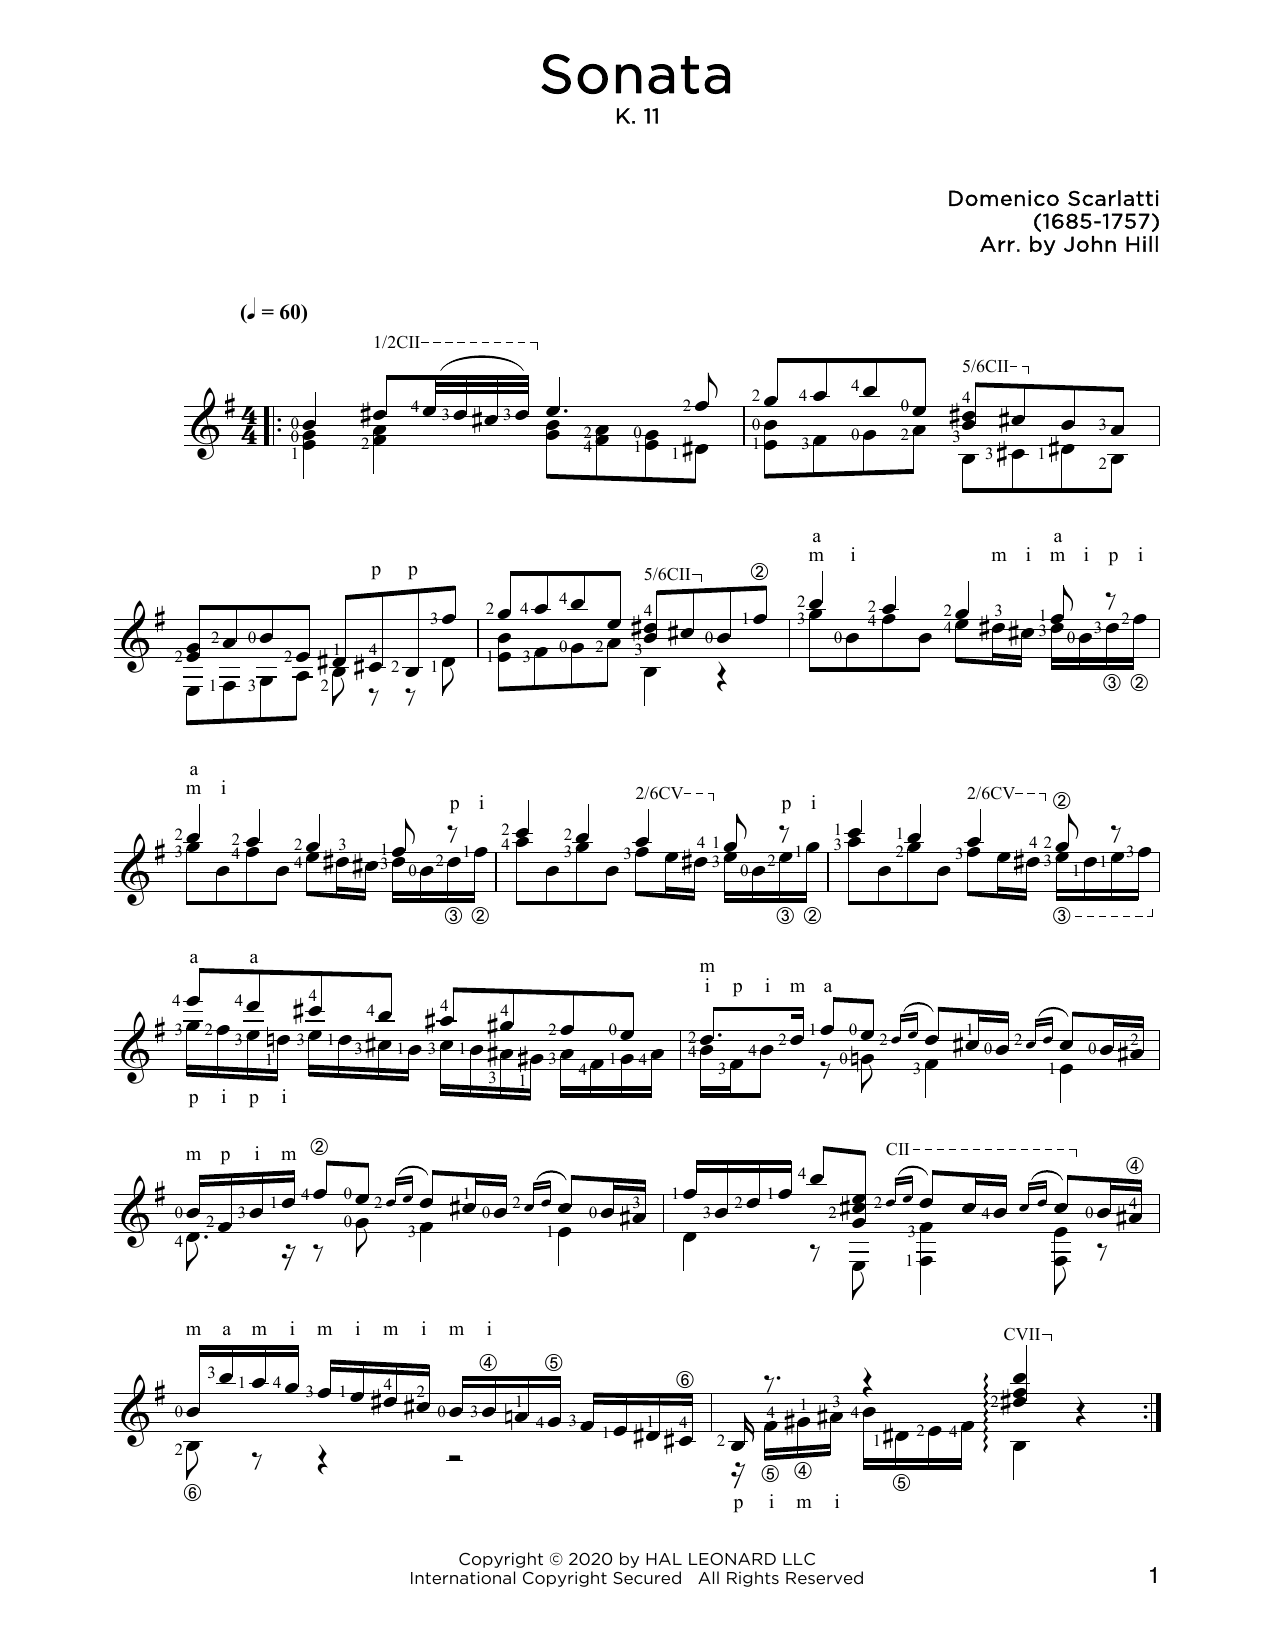 Download Domenico Scarlatti Sonata, L. 352 Sheet Music